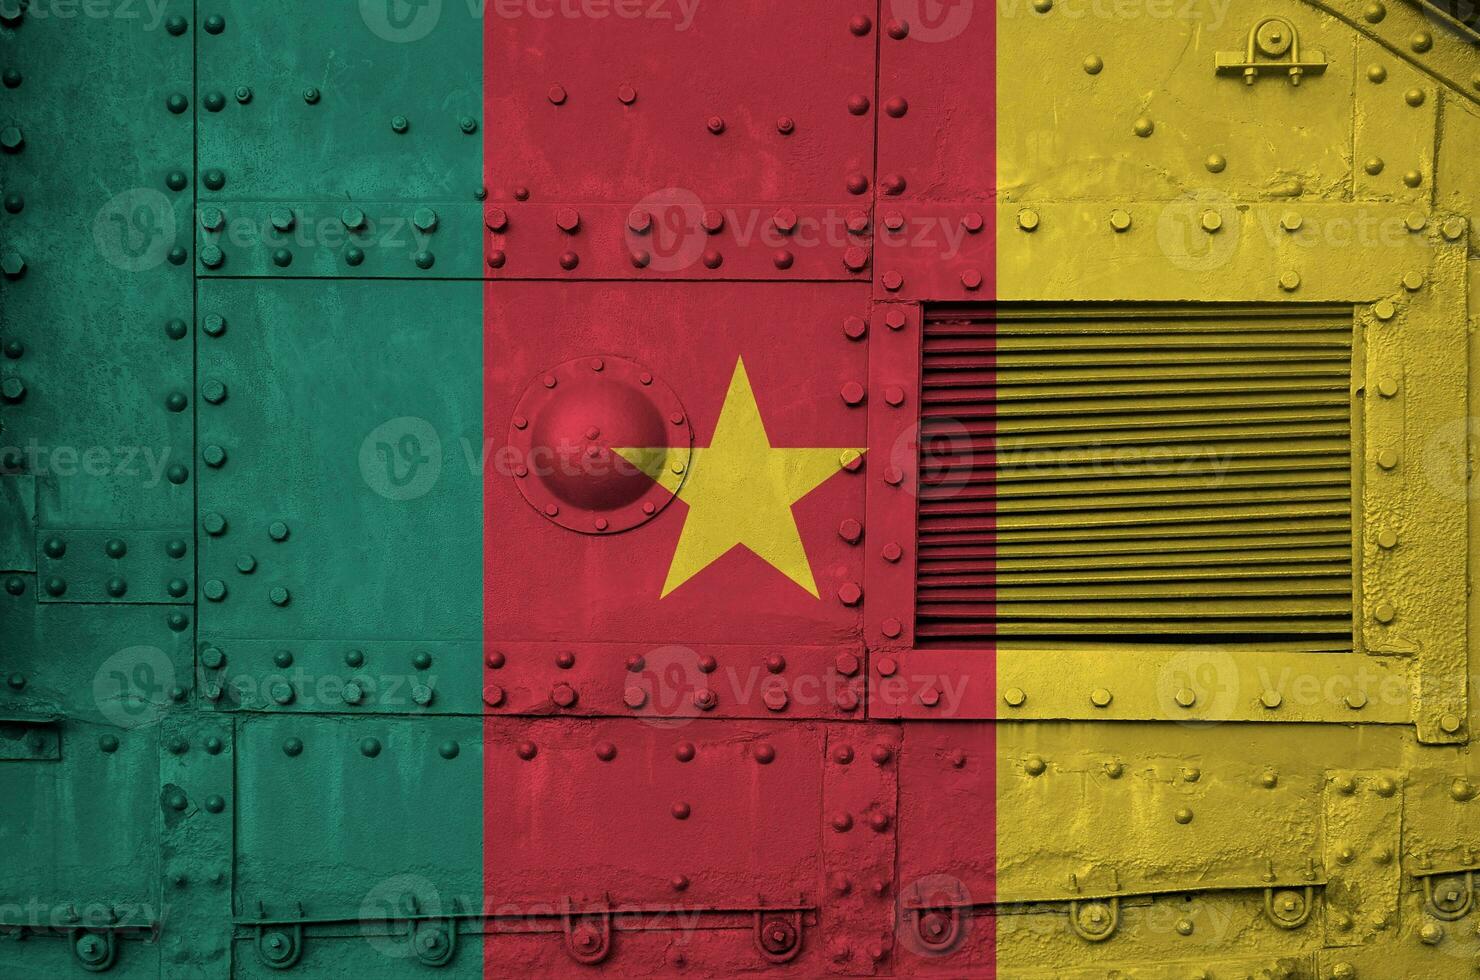 cameroon flagga avbildad på sida del av militär armerad tank närbild. armén krafter konceptuell bakgrund foto